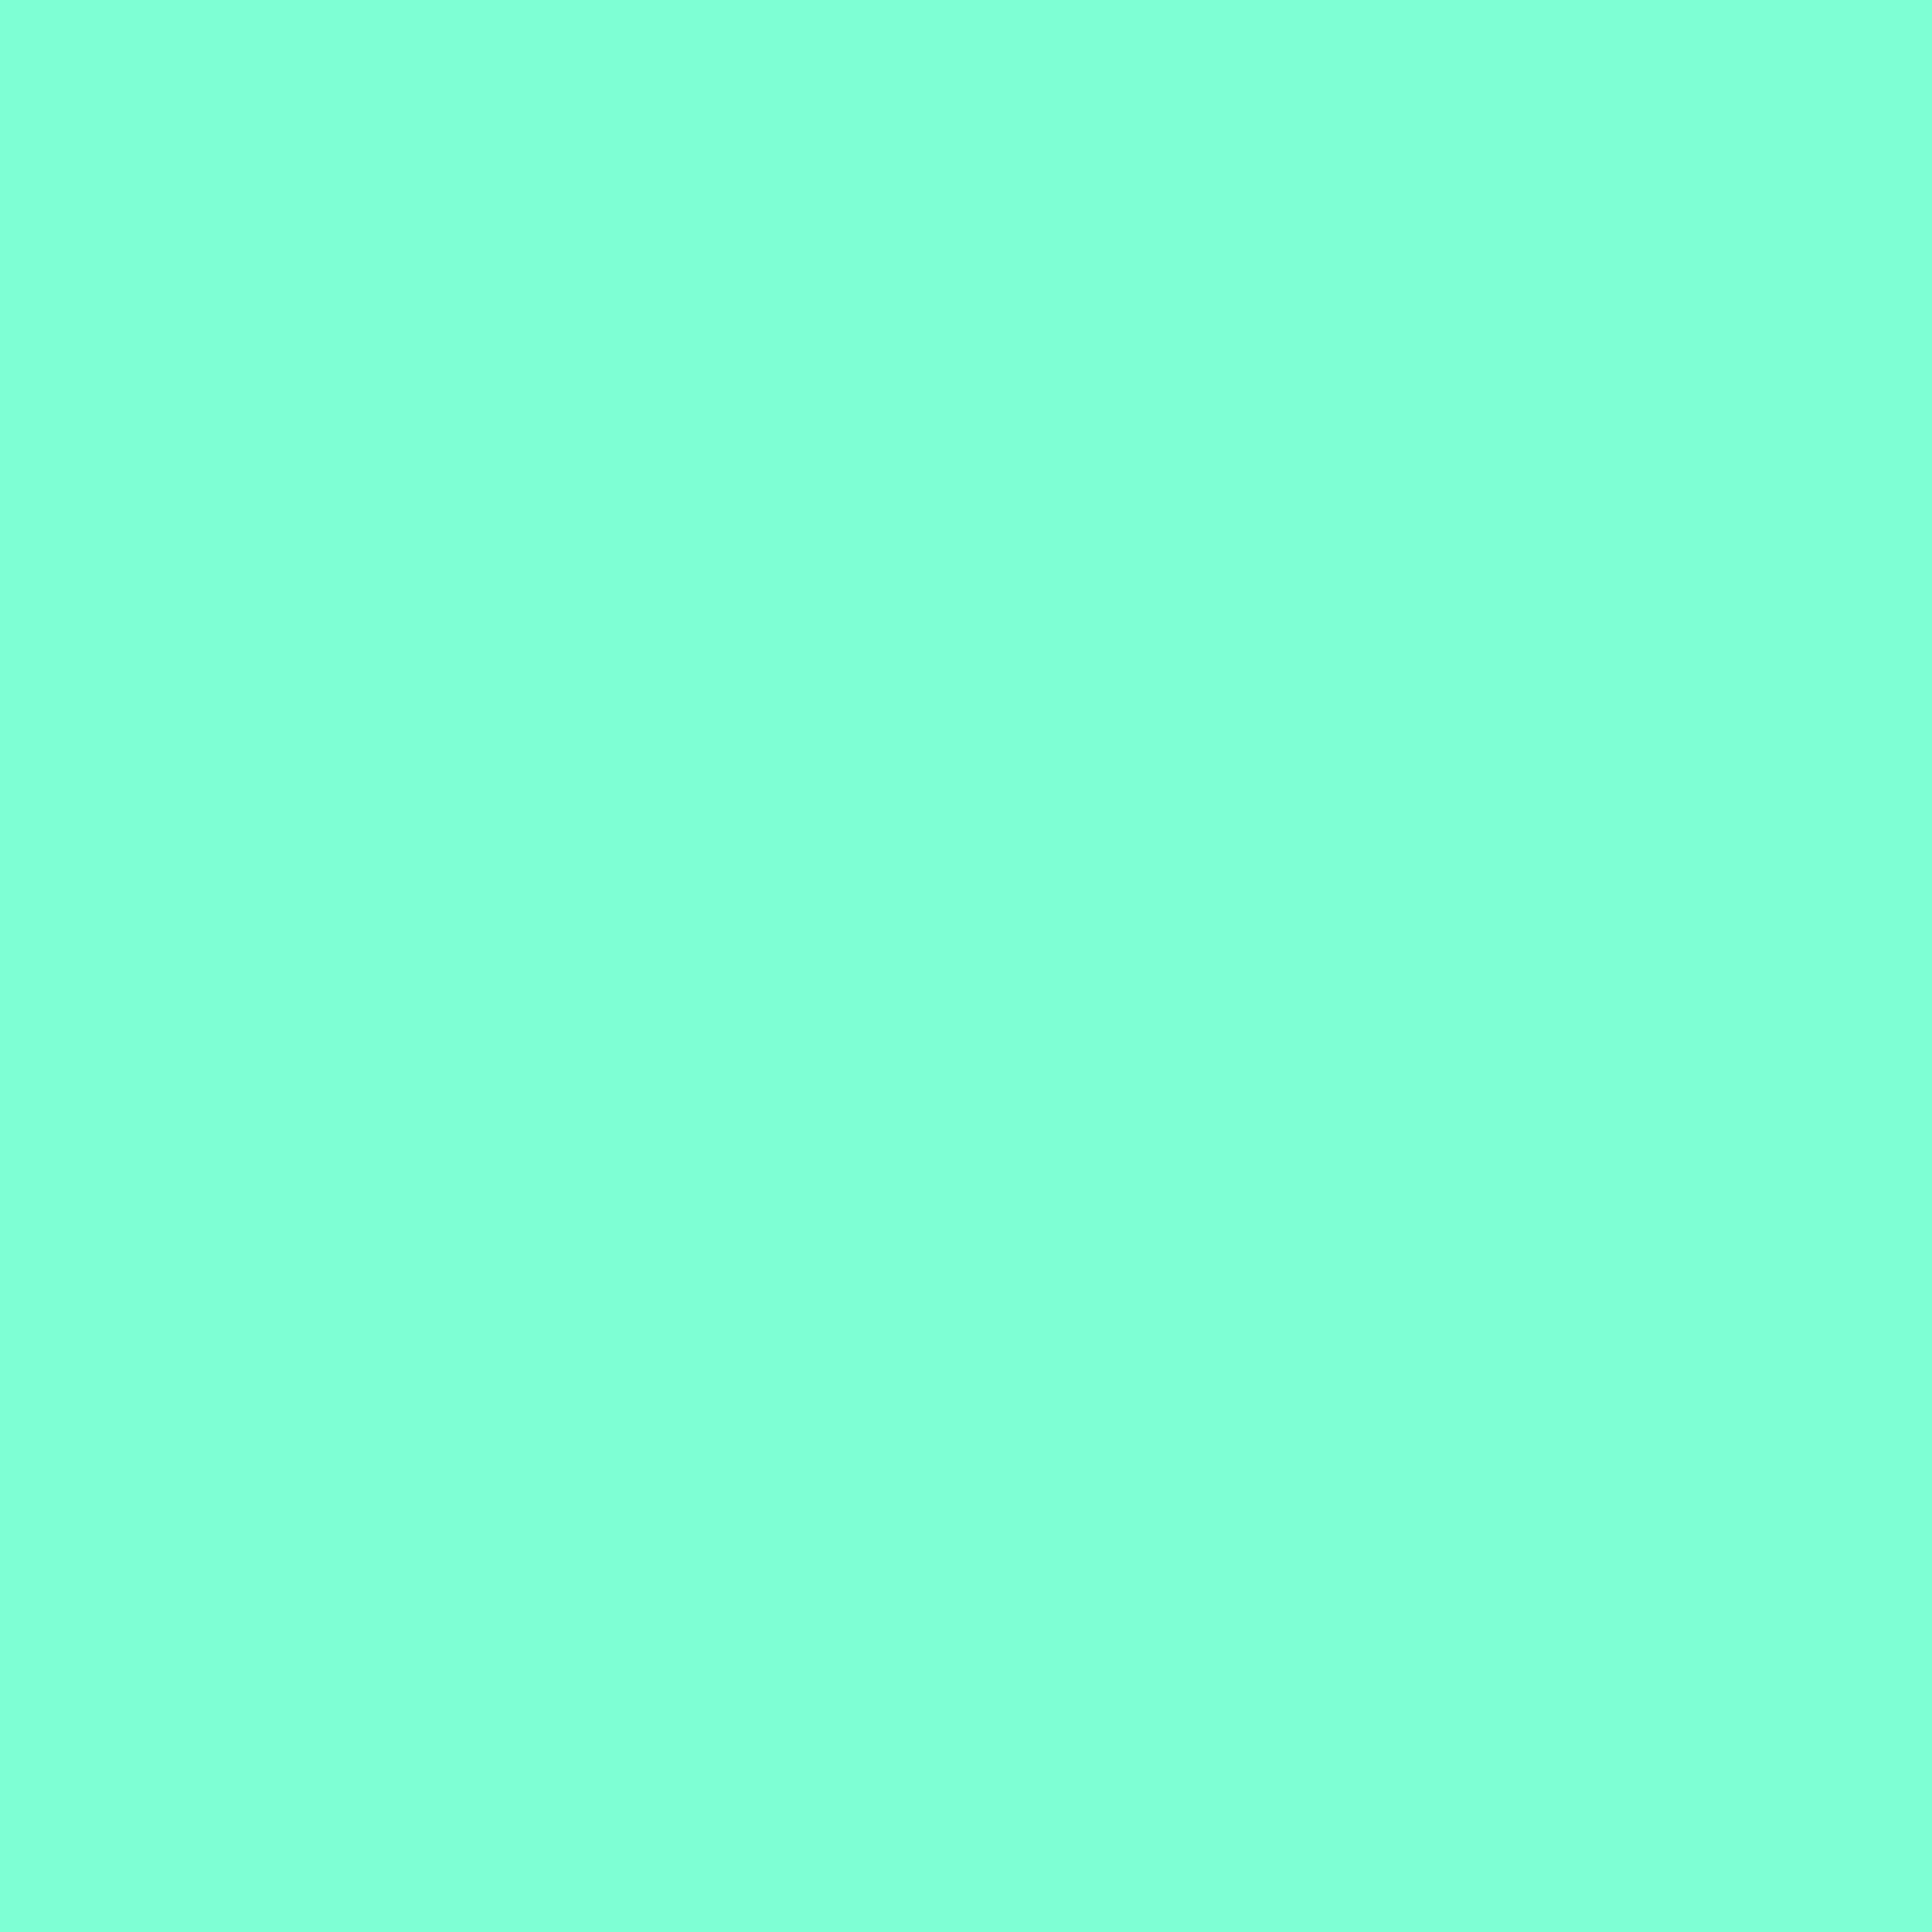 2732x2732 Aquamarine Solid Color Background